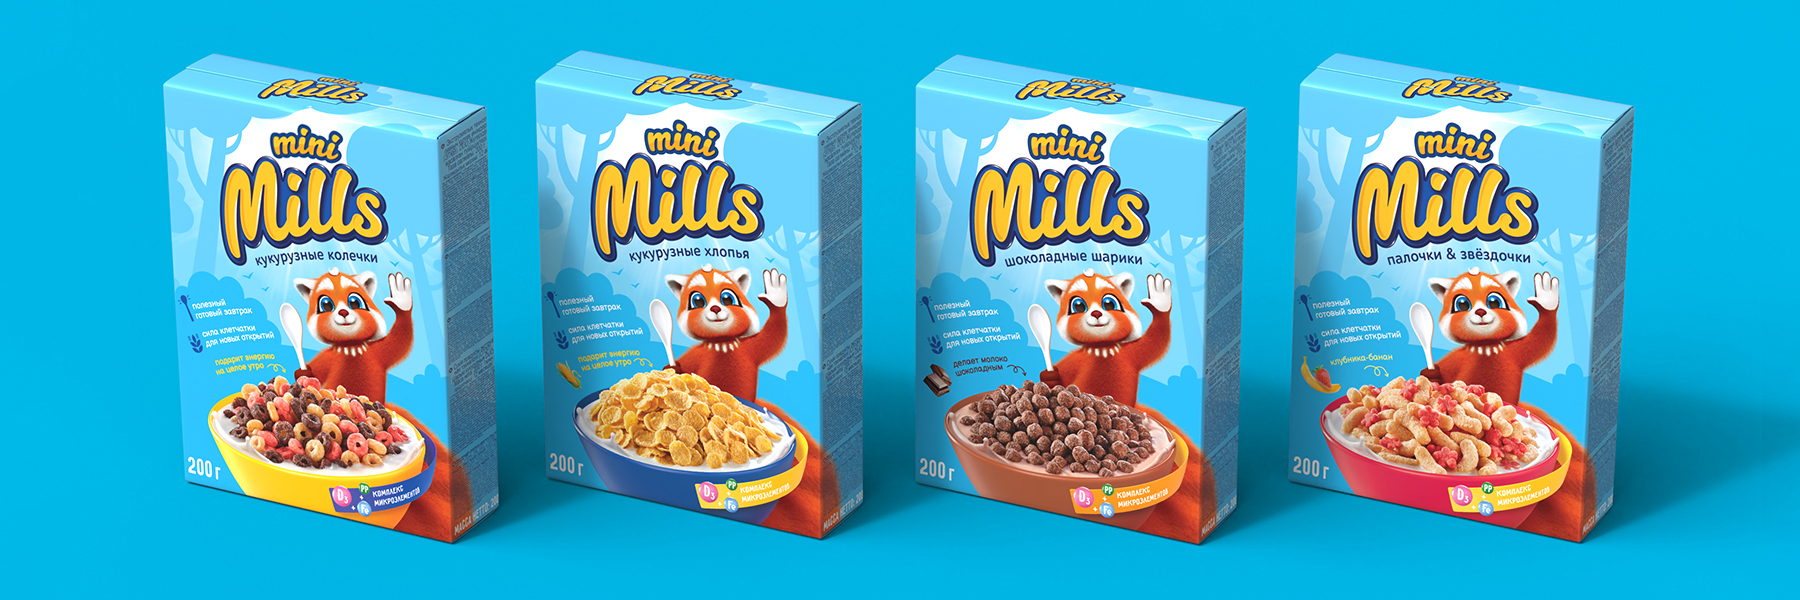 Дизайн упаковки полезных готовых завтраков Mini Mills Союзпищепром